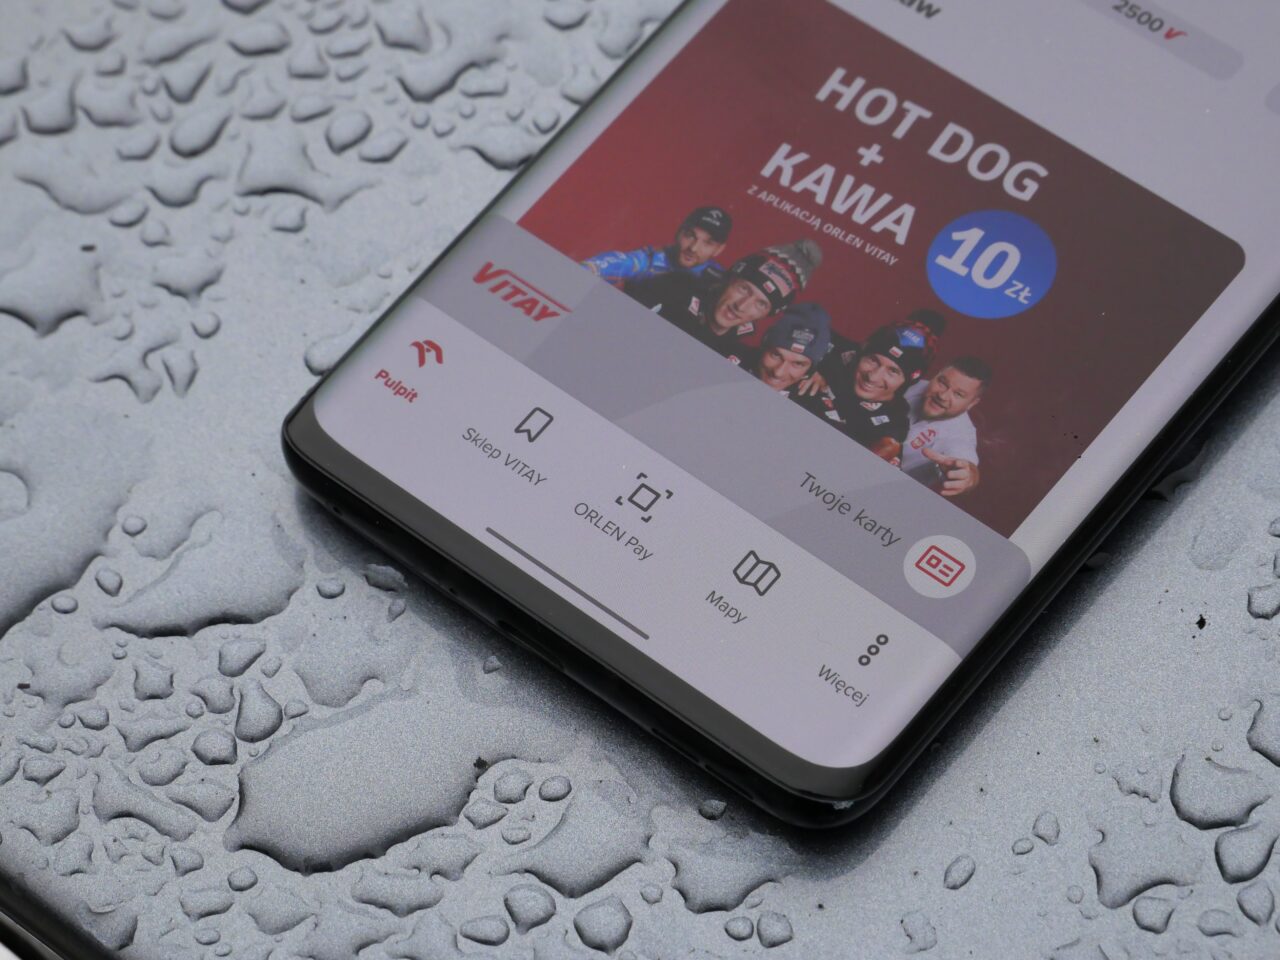 Smartfon leżący na mokrej powierzchni wyświetla reklamę z grupą osób i tekstem "HOT DOG + KAWA 10 zł" na ekranie.